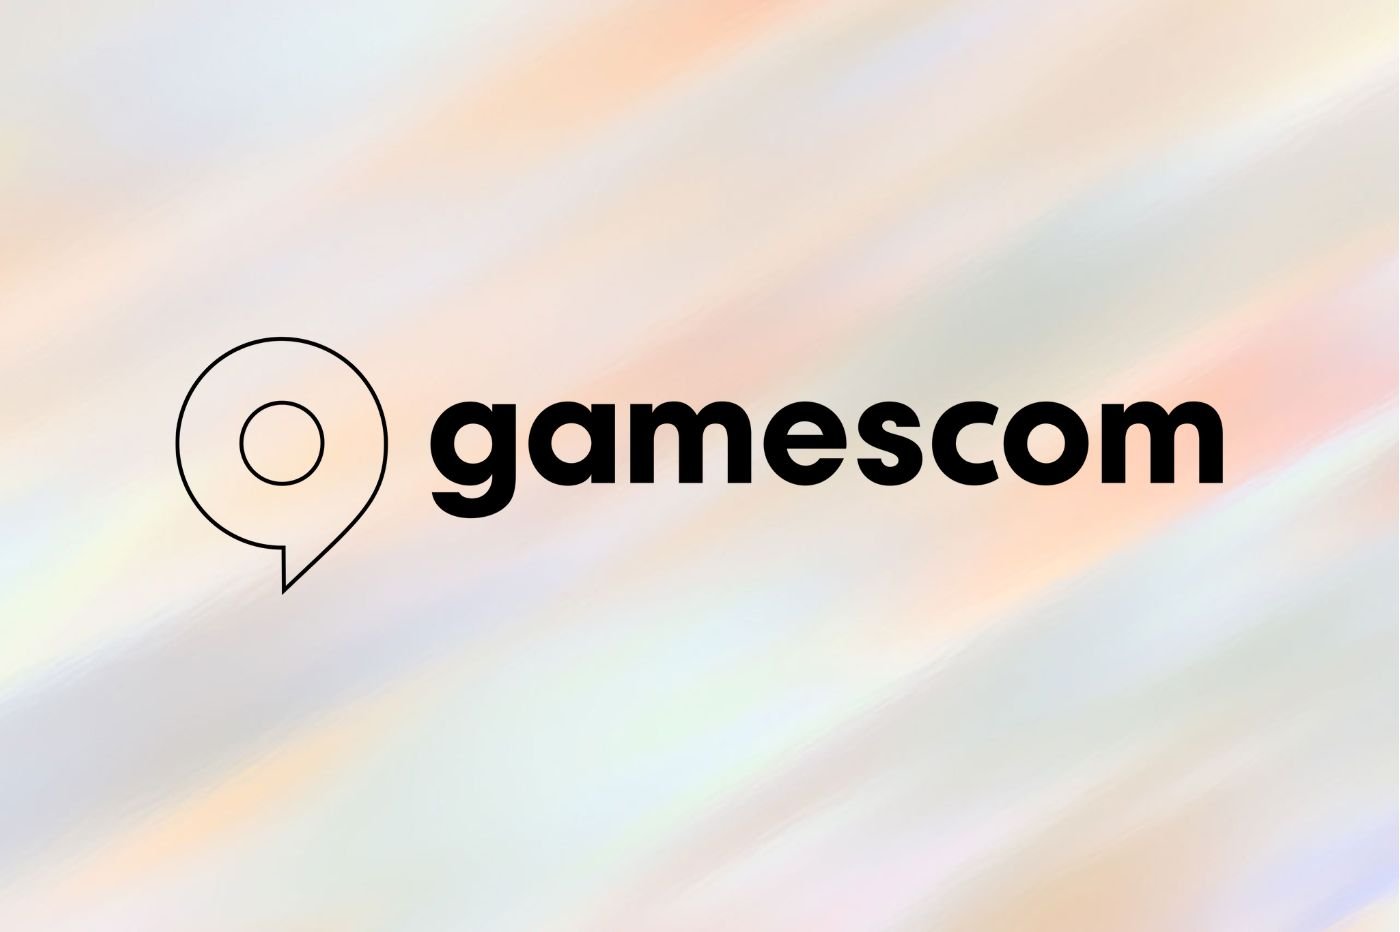 Gamescom recap